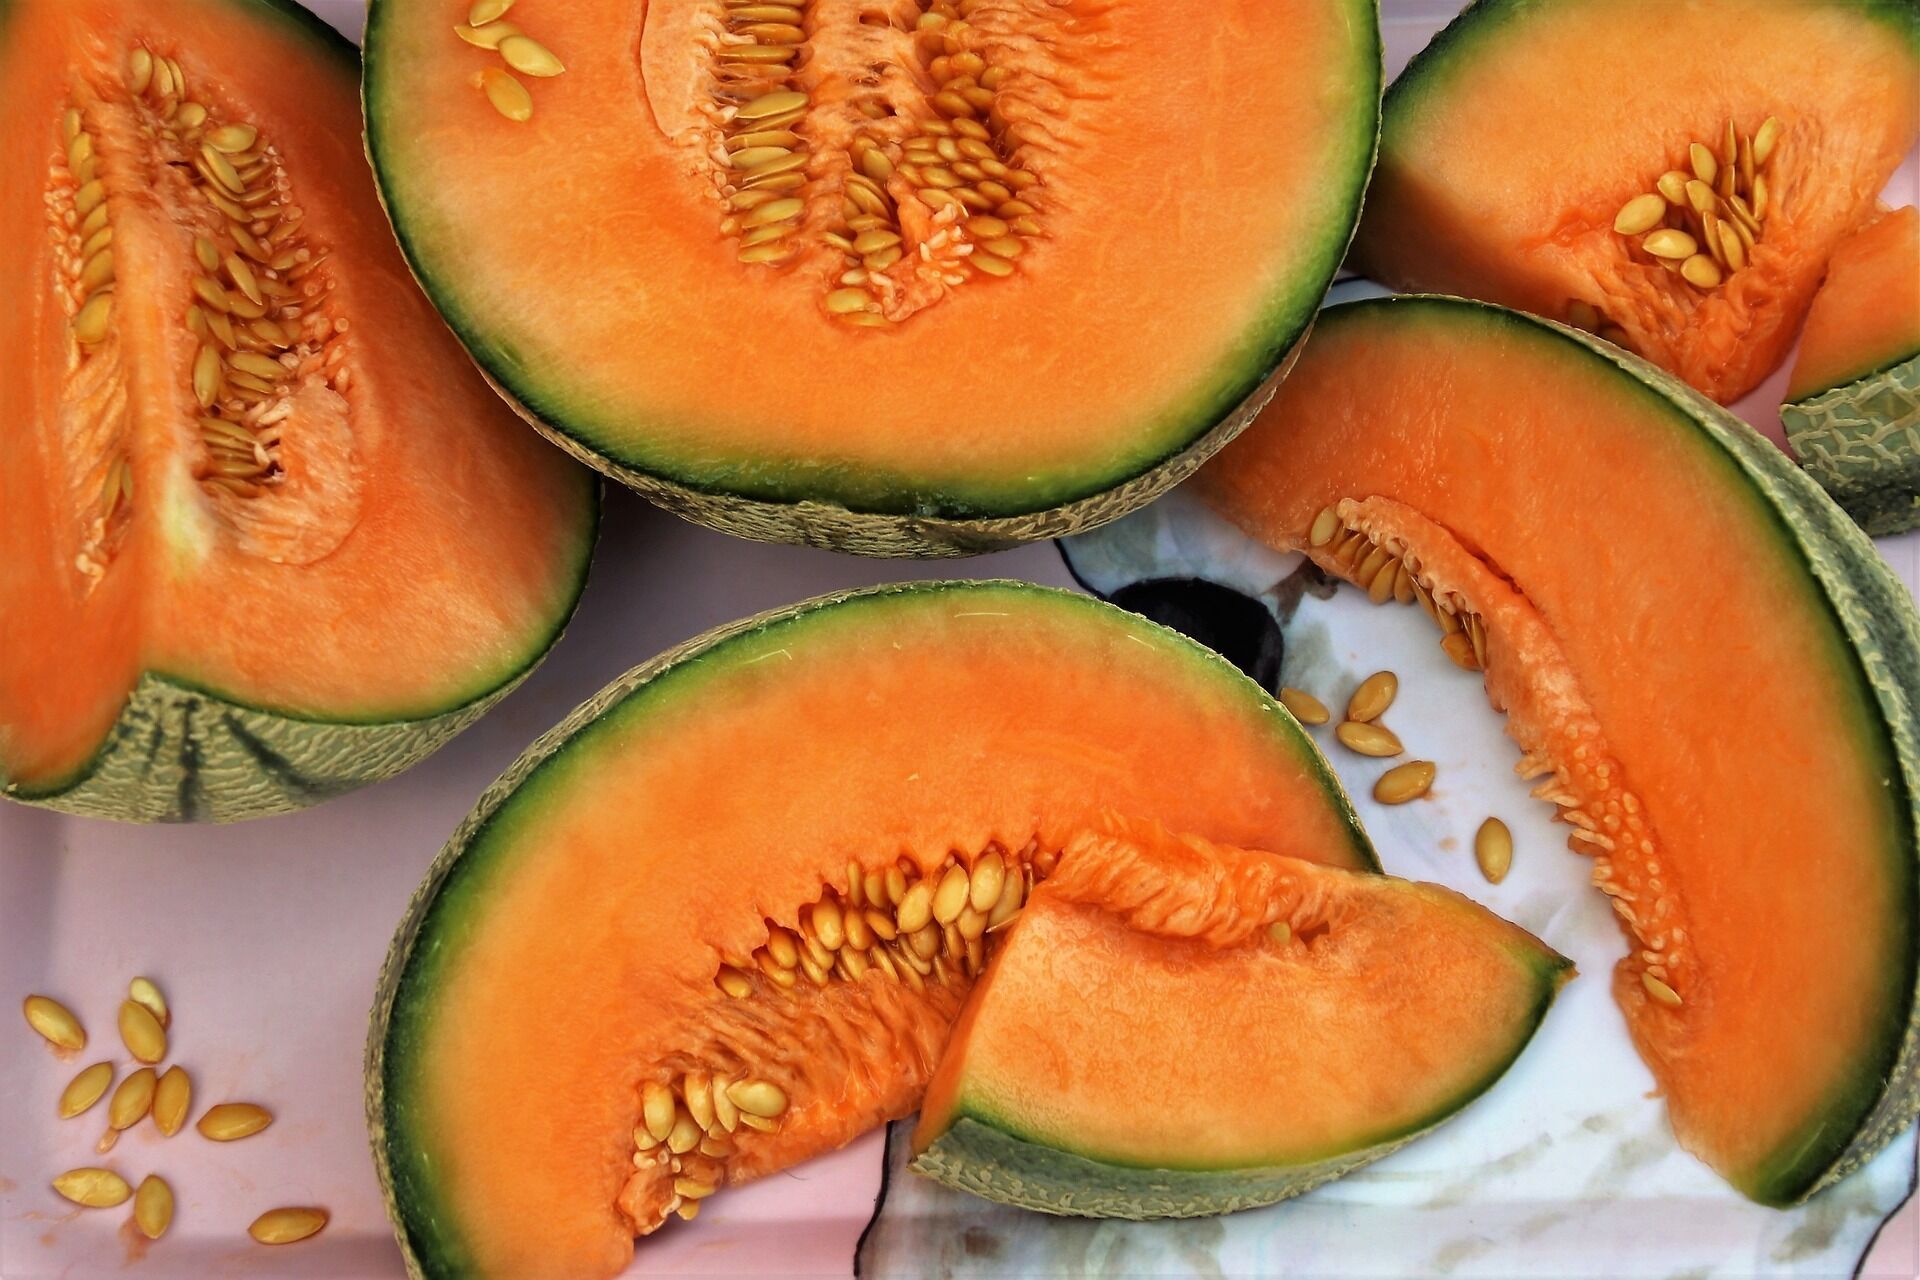 Melon składa się w 90% z wody